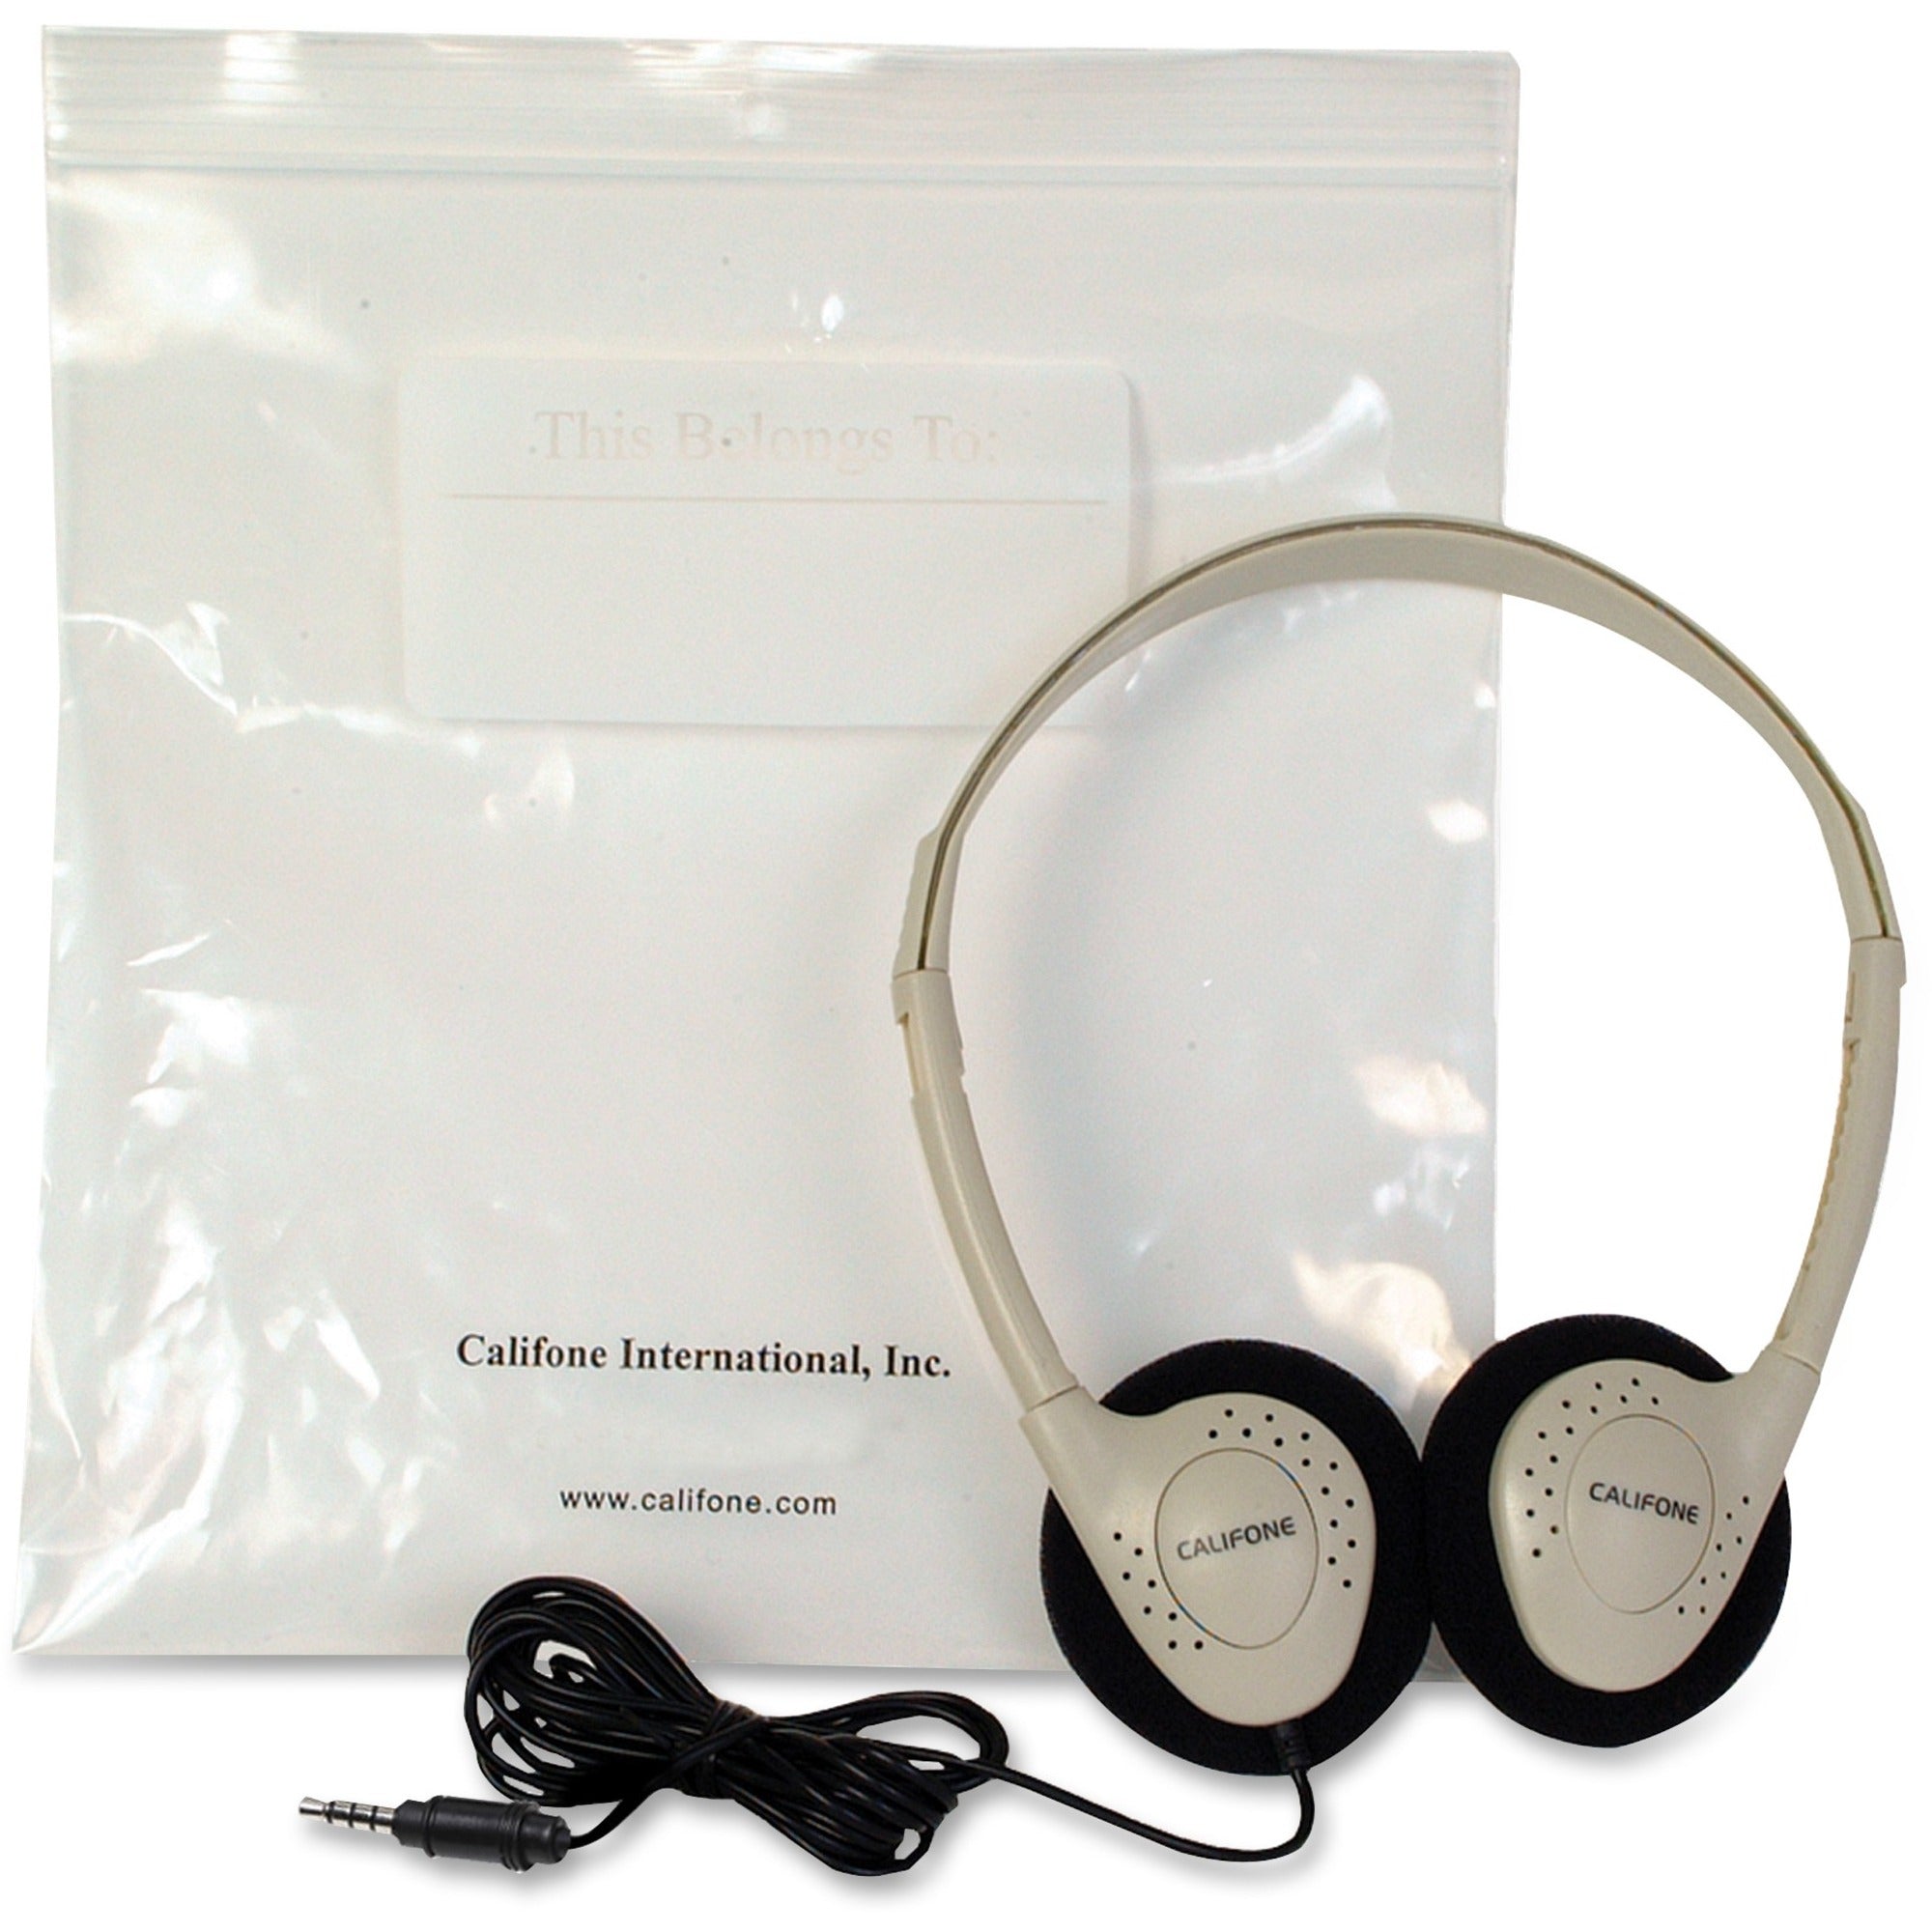 Califone CA-2 Storage Stereo Headphone - Stereo - Beige - Mini-phone (3.5mm) - Wired - 32 Ohm - 20 Hz 20 kHz - Over-the-head - Binaural - Supra-aural - 6 ft Cable - 1 - 